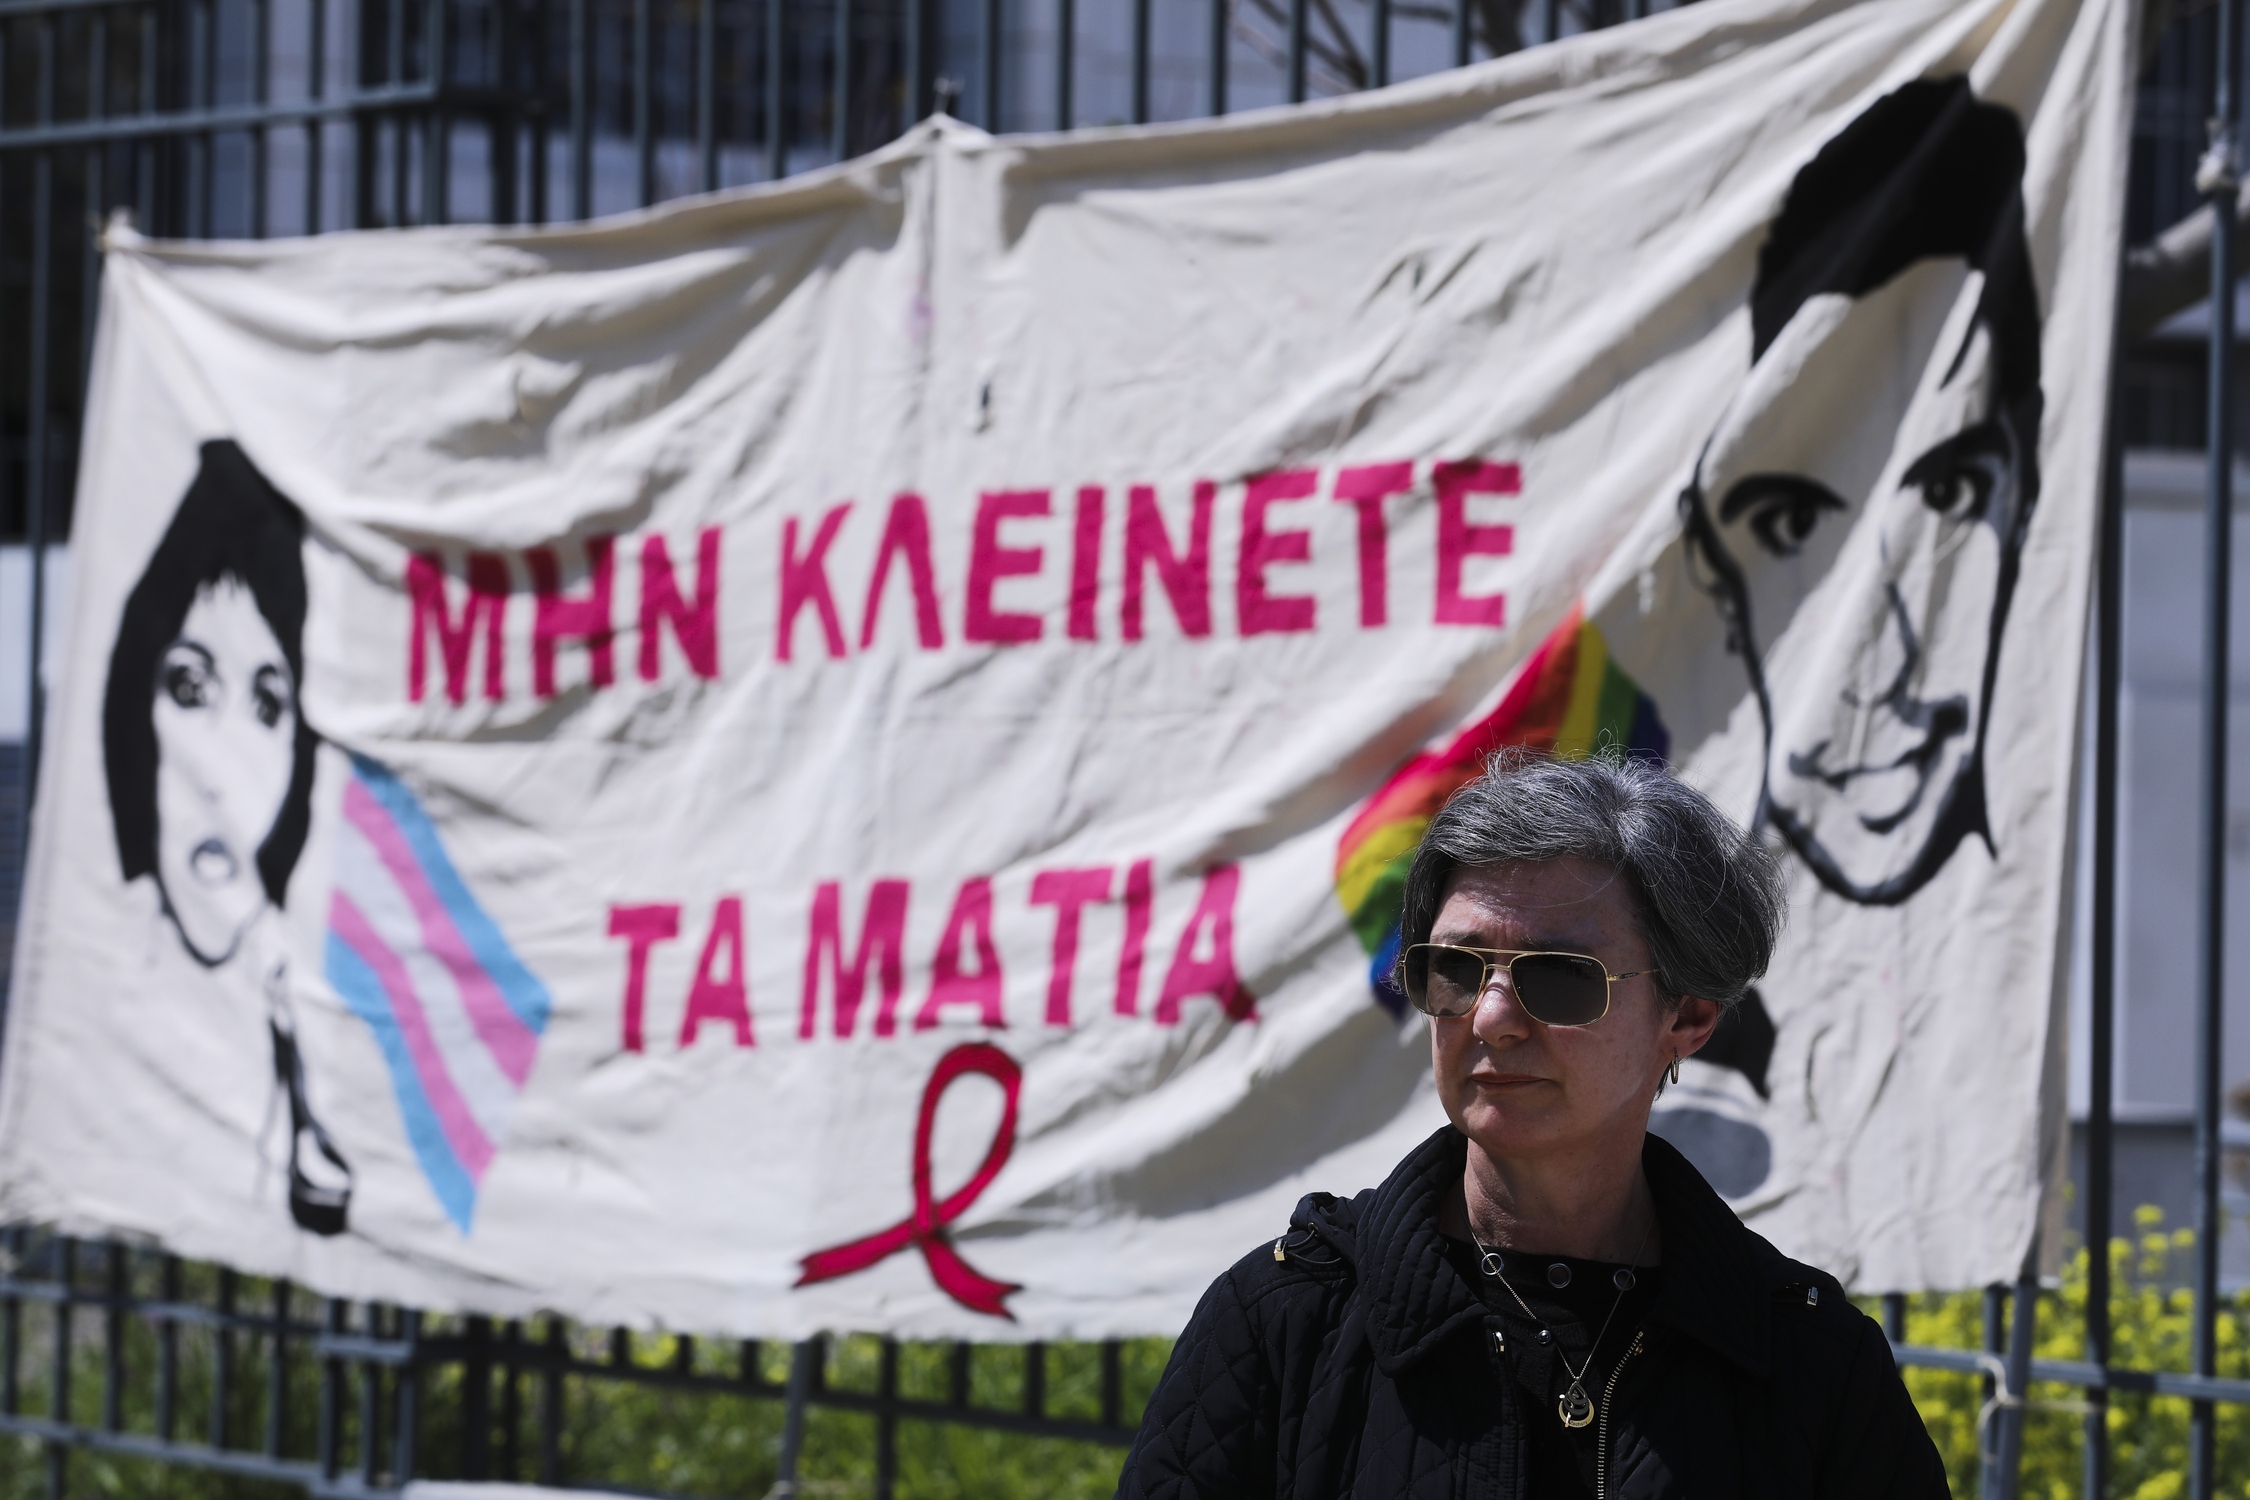 Η μητέρα του Ζακ Κωστόπουλου, Ελένη, μπροστά στο πανό «Μην κλείνετε τα μάτια», στη συγκέντρωση αλληλεγγύης συλλογικοτήτων, έξω απο το πρωτοδικείο Αθηνών, κατά την διάρκεια της δίκης για την δολοφονία της Zackie Oh.